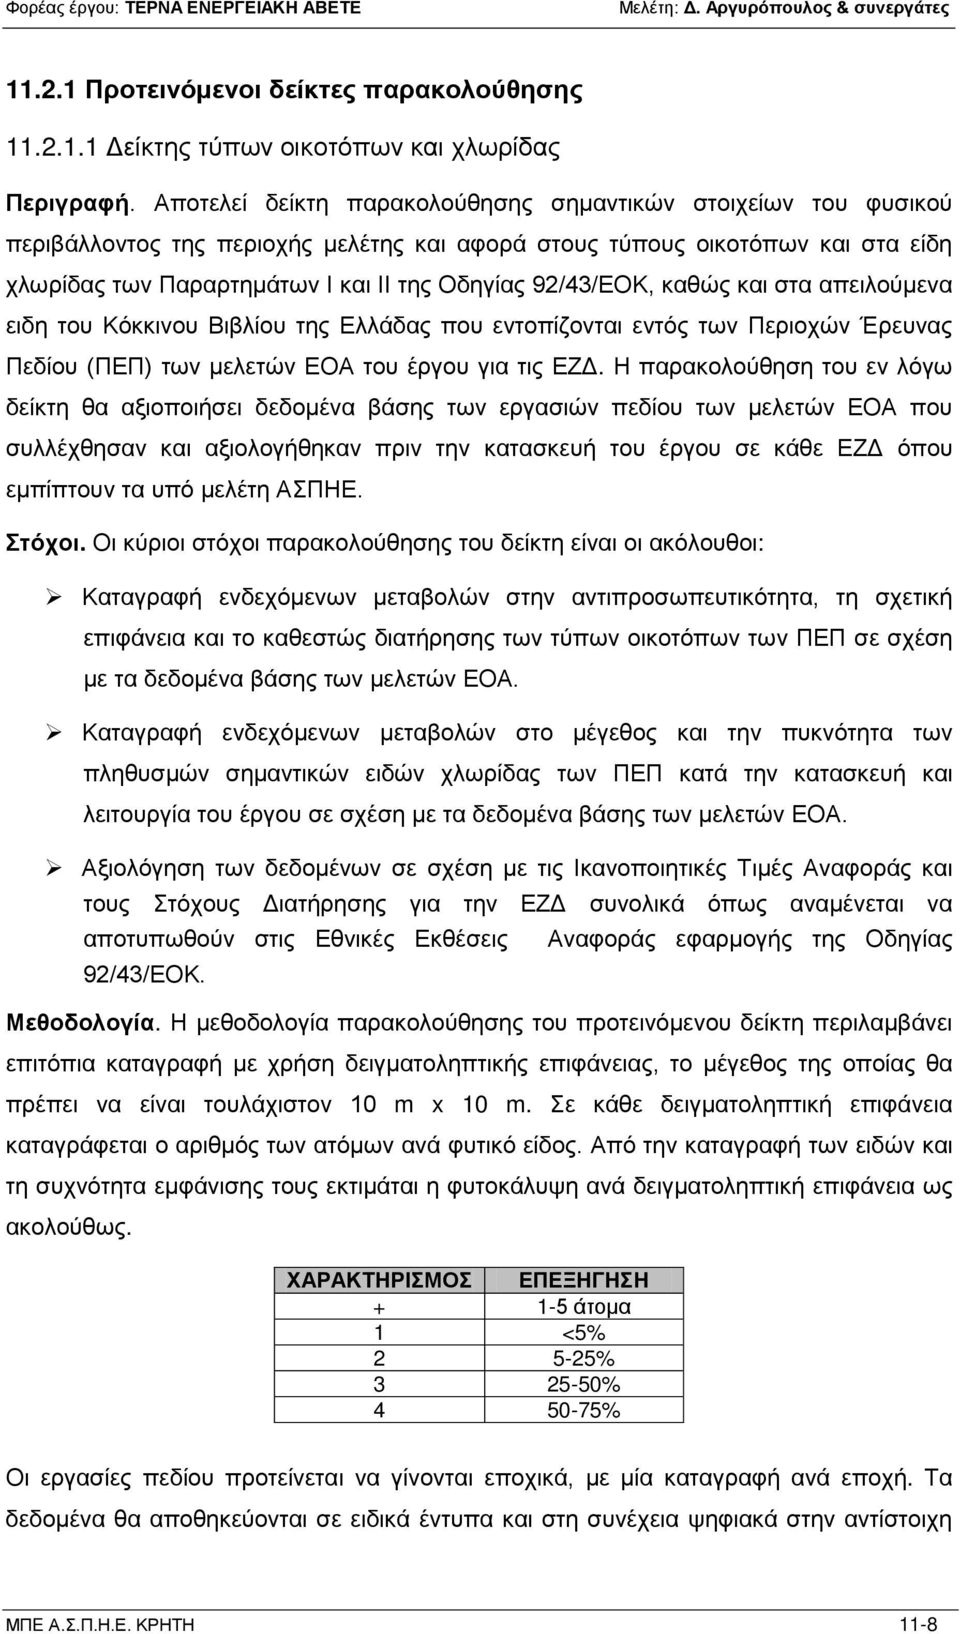 92/43/ΕΟΚ, καθώς και στα απειλούμενα ειδη του Κόκκινου Βιβλίου της Ελλάδας που εντοπίζονται εντός των Περιοχών Έρευνας Πεδίου (ΠΕΠ) των μελετών ΕΟΑ του έργου για τις ΕΖΔ.